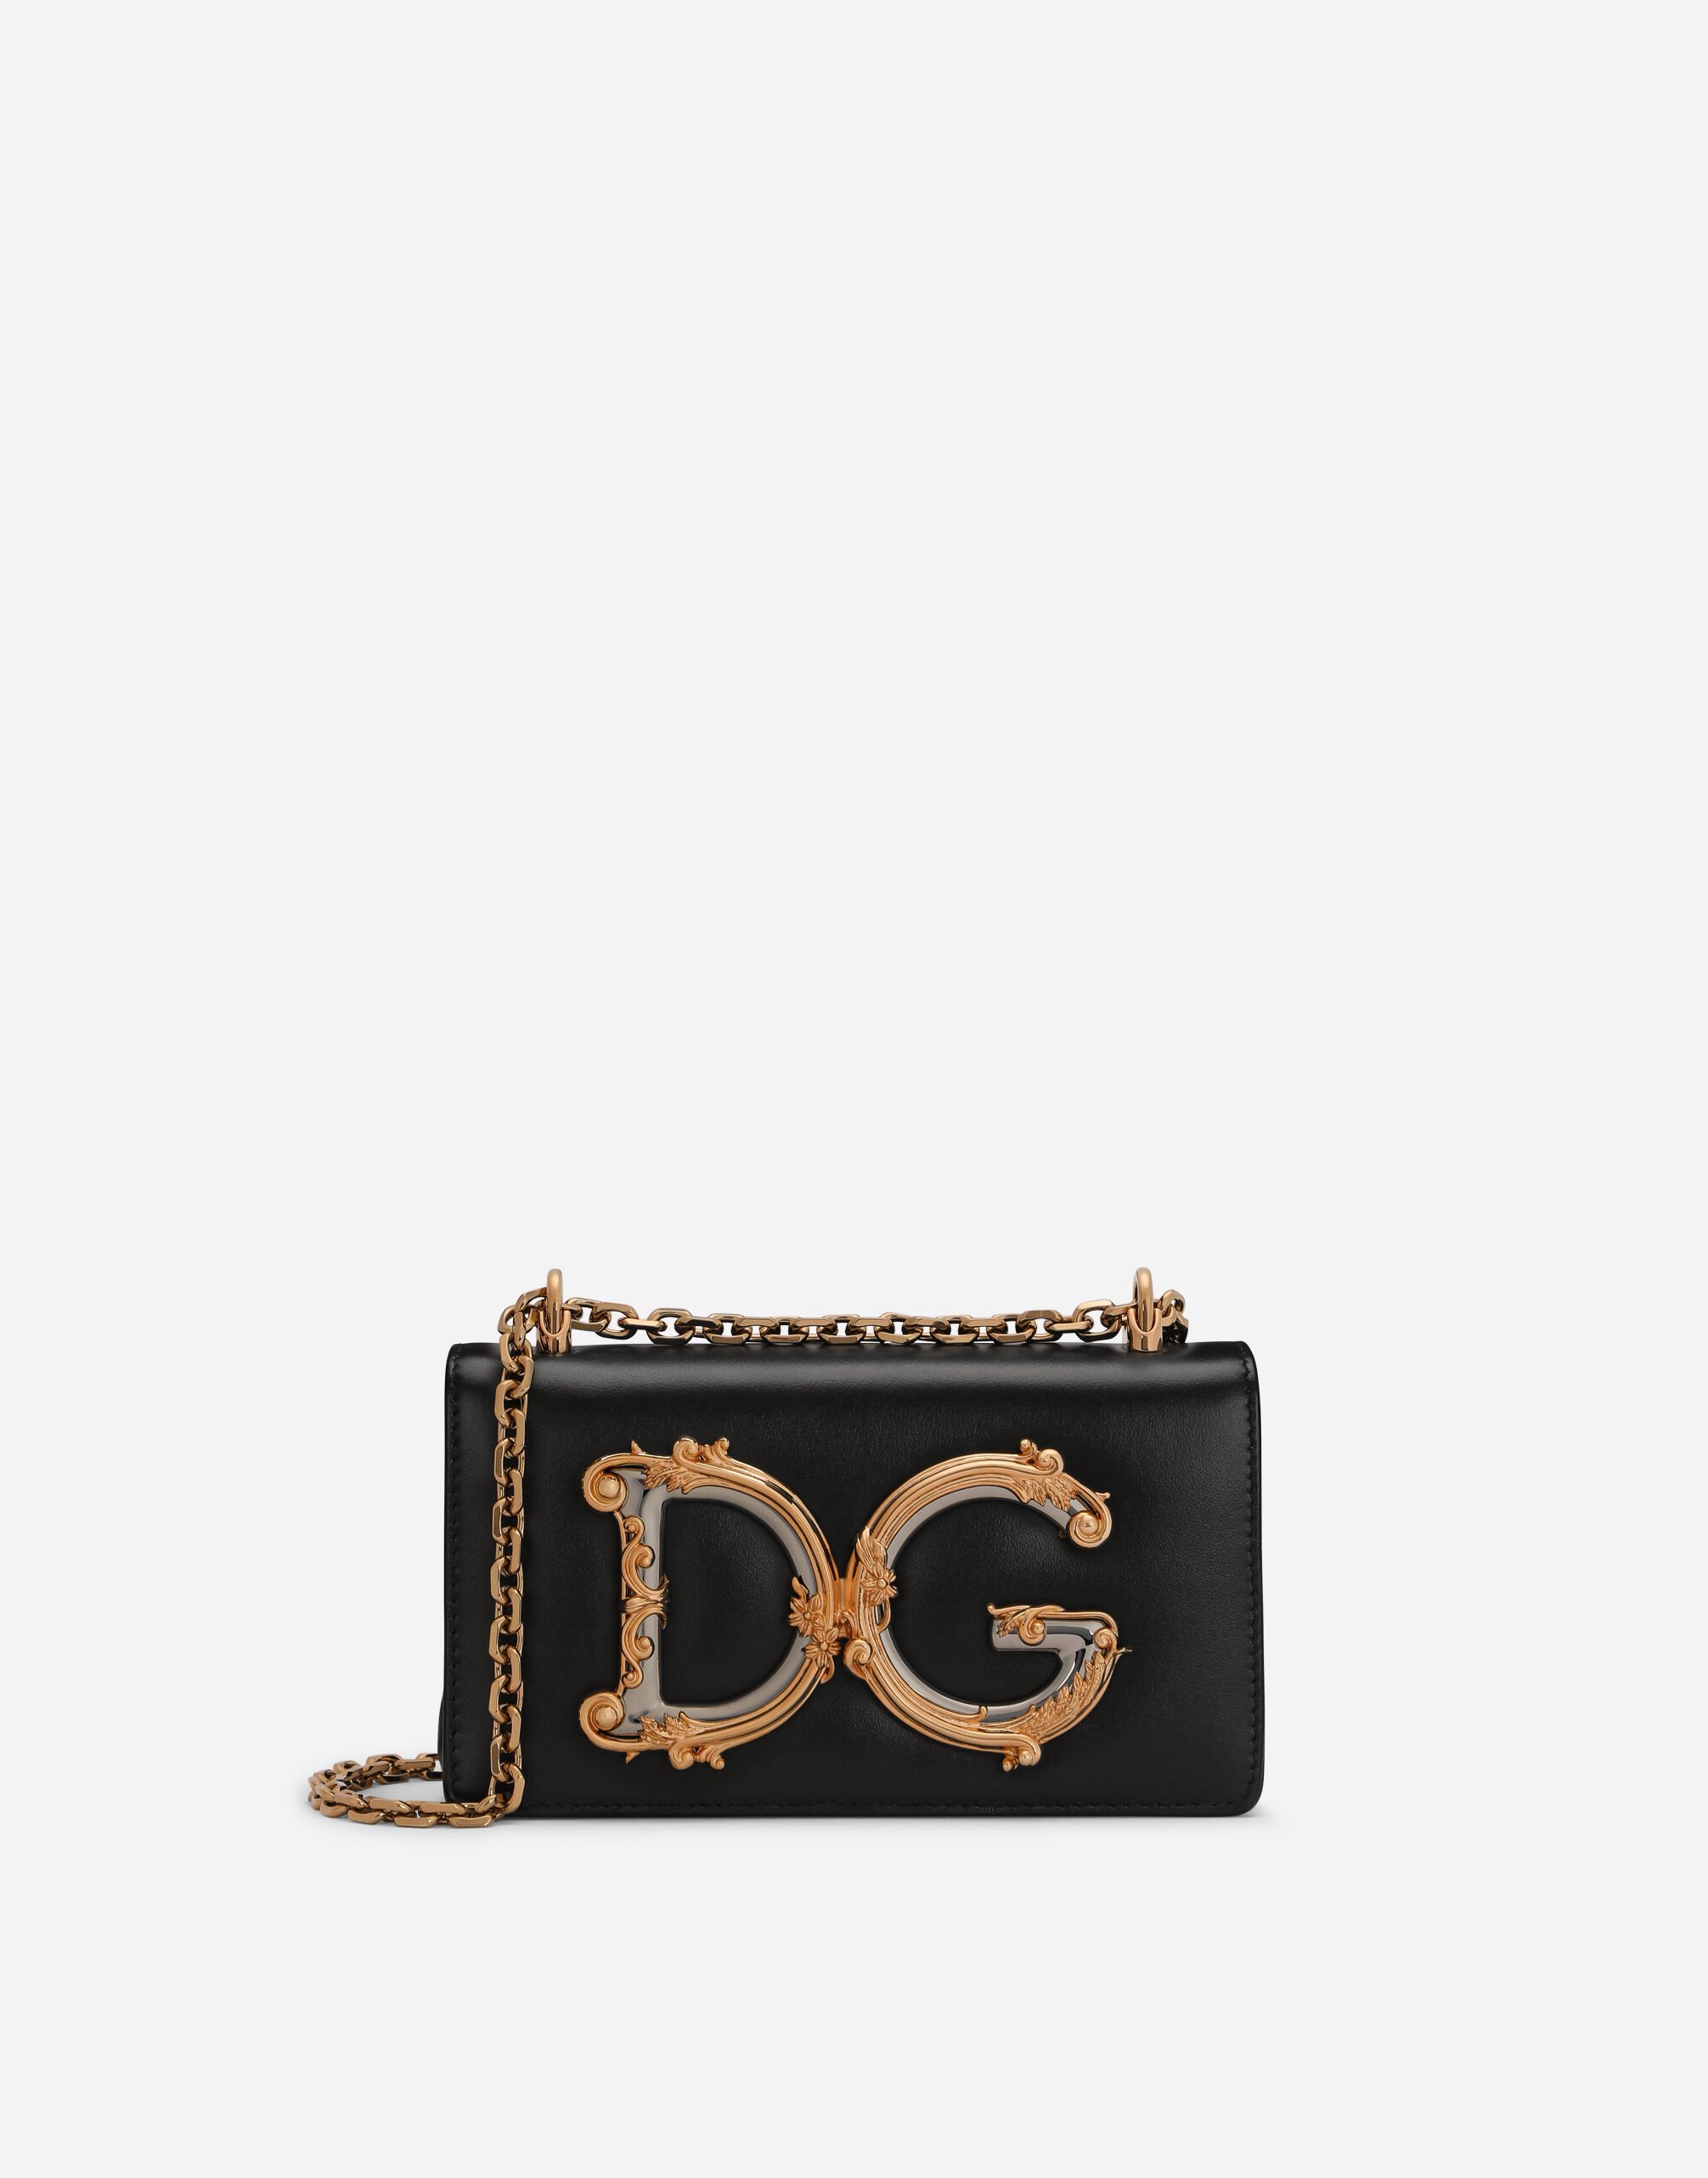 Dolce & Gabbana Calfskin DG Girls phone bag Pink BB6003A1001